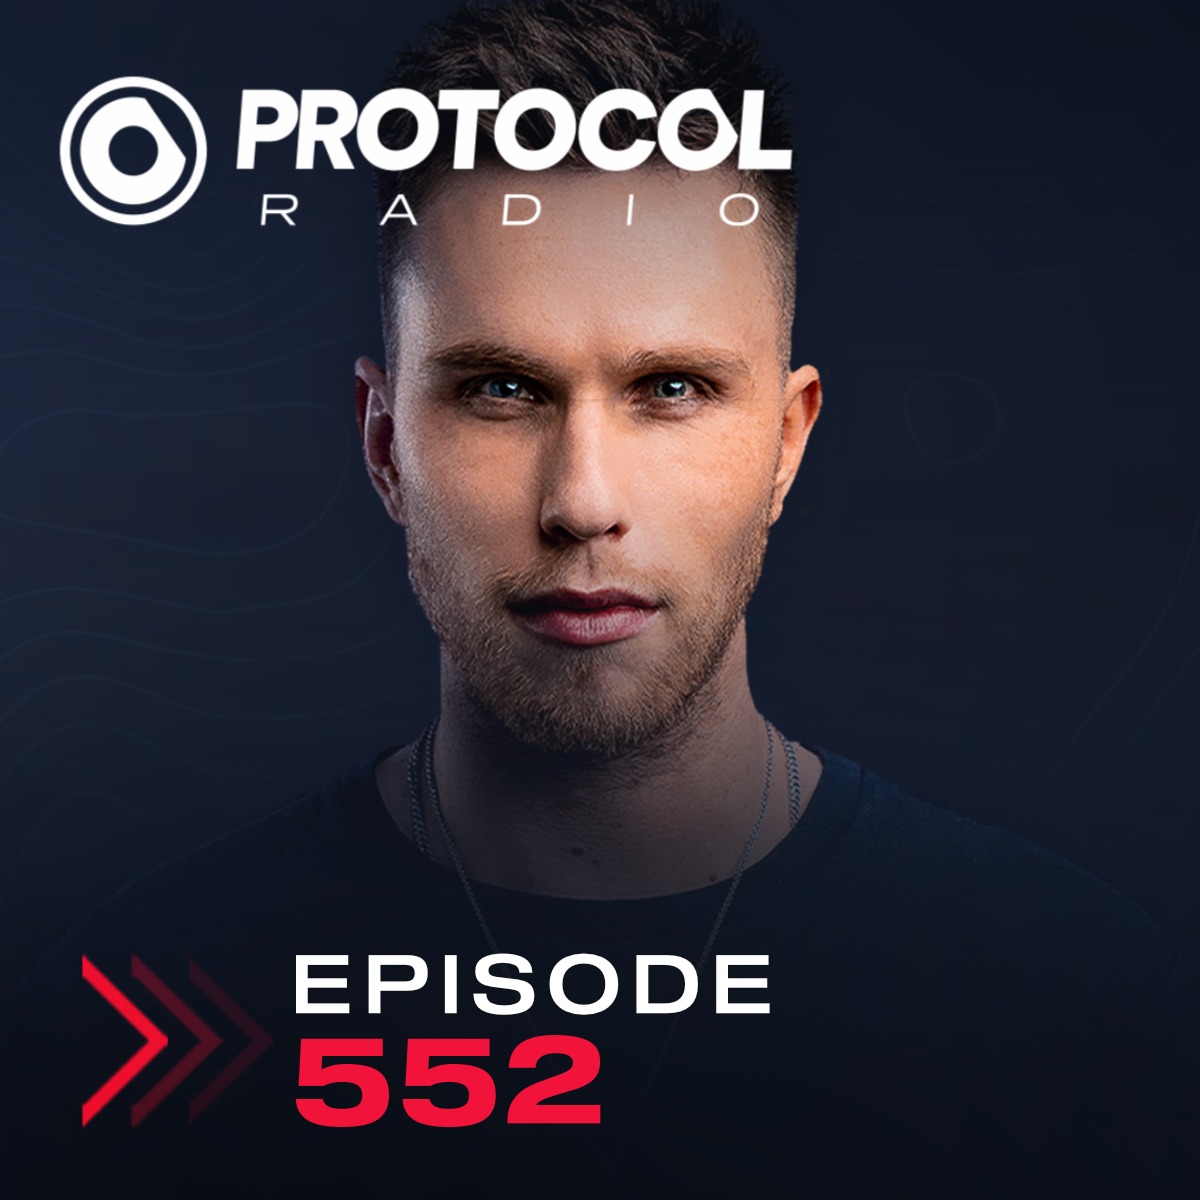 Protocol Radio #552